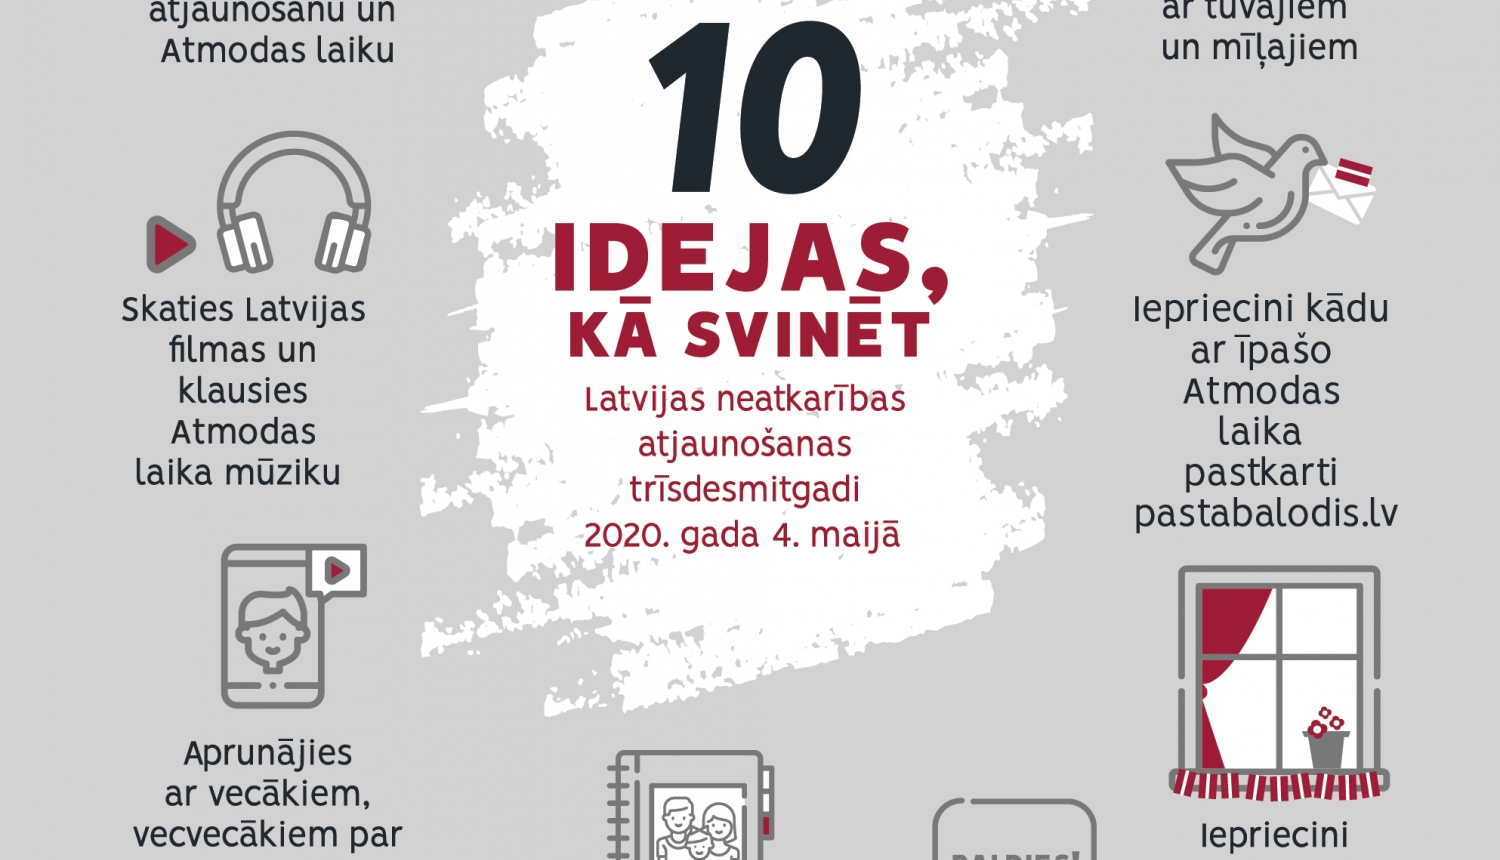 10 idejas, kā svinēt Latvijas neatkarības atjaunošanas trīsdesmitgadi 4. maijā